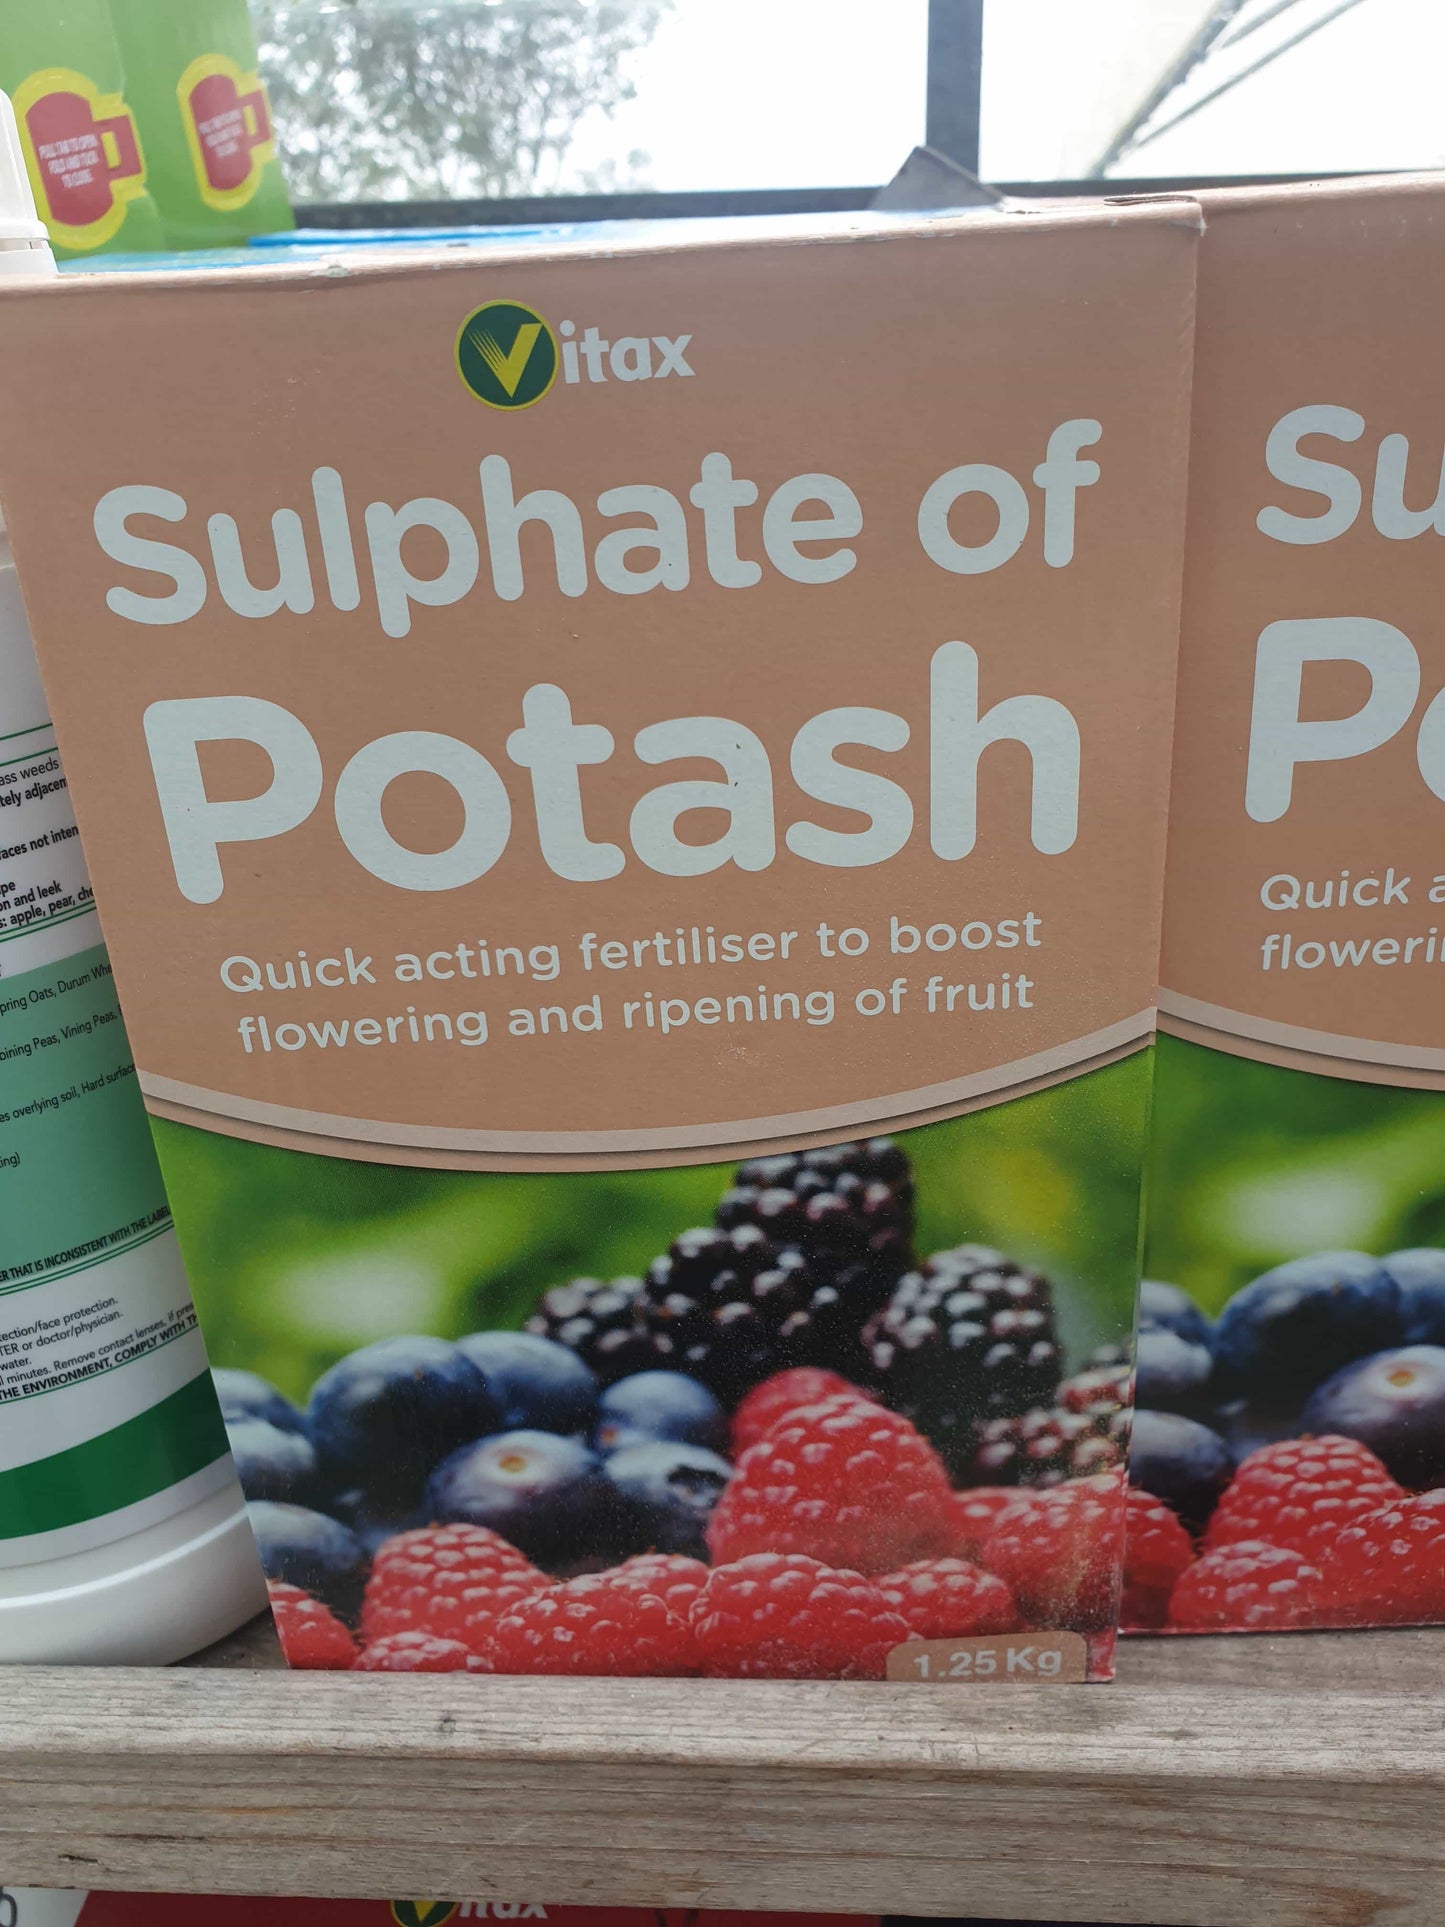 Sulphate of potash